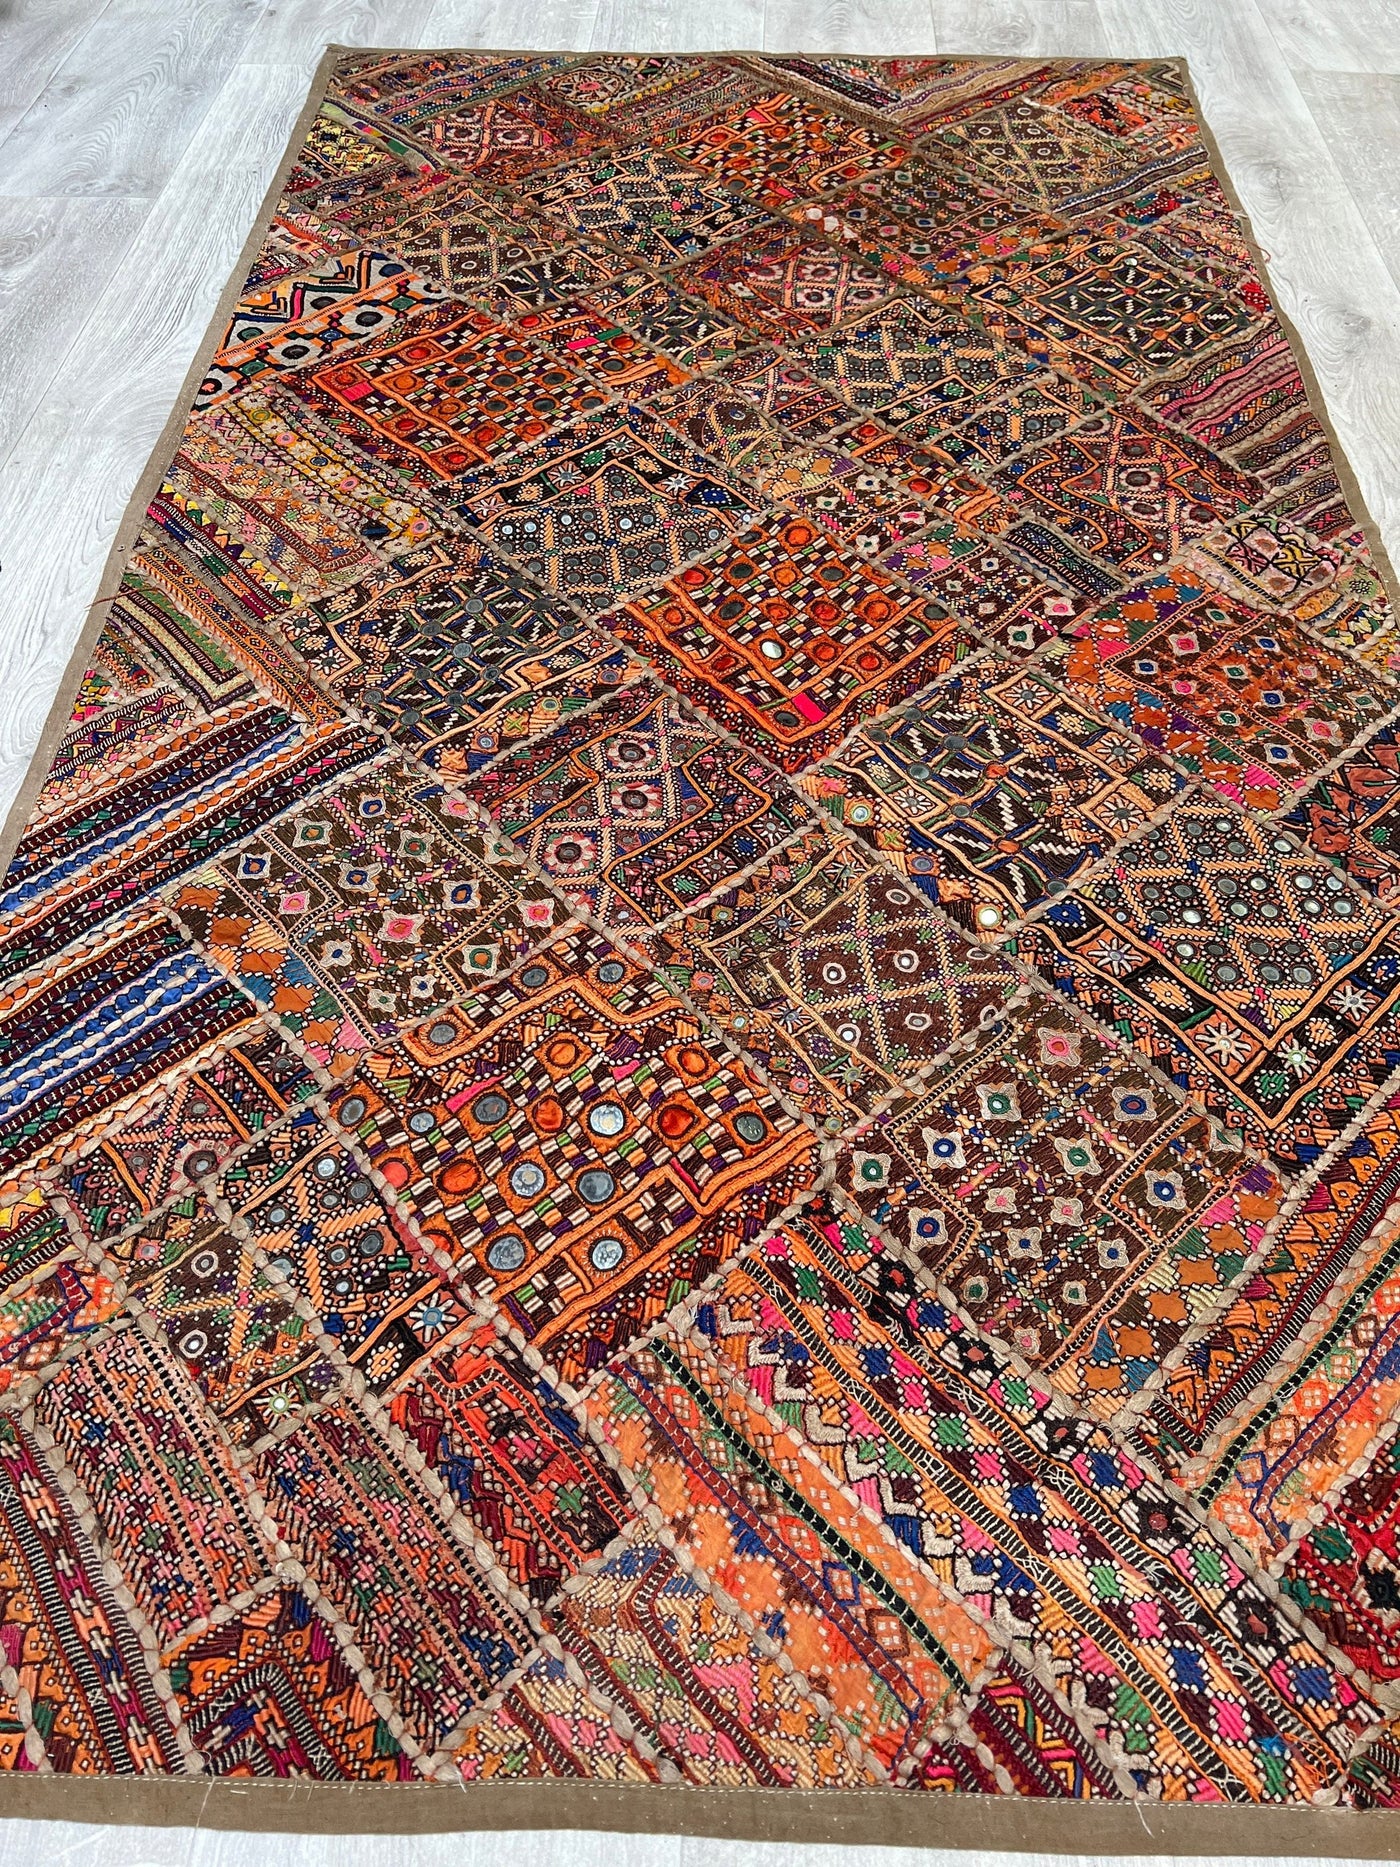 173x97 cm Vintage Bohemian orientalische Patchwork teppich Wandbehang wandteppich  Nr:21/9 Wandbehang Orientsbazar   